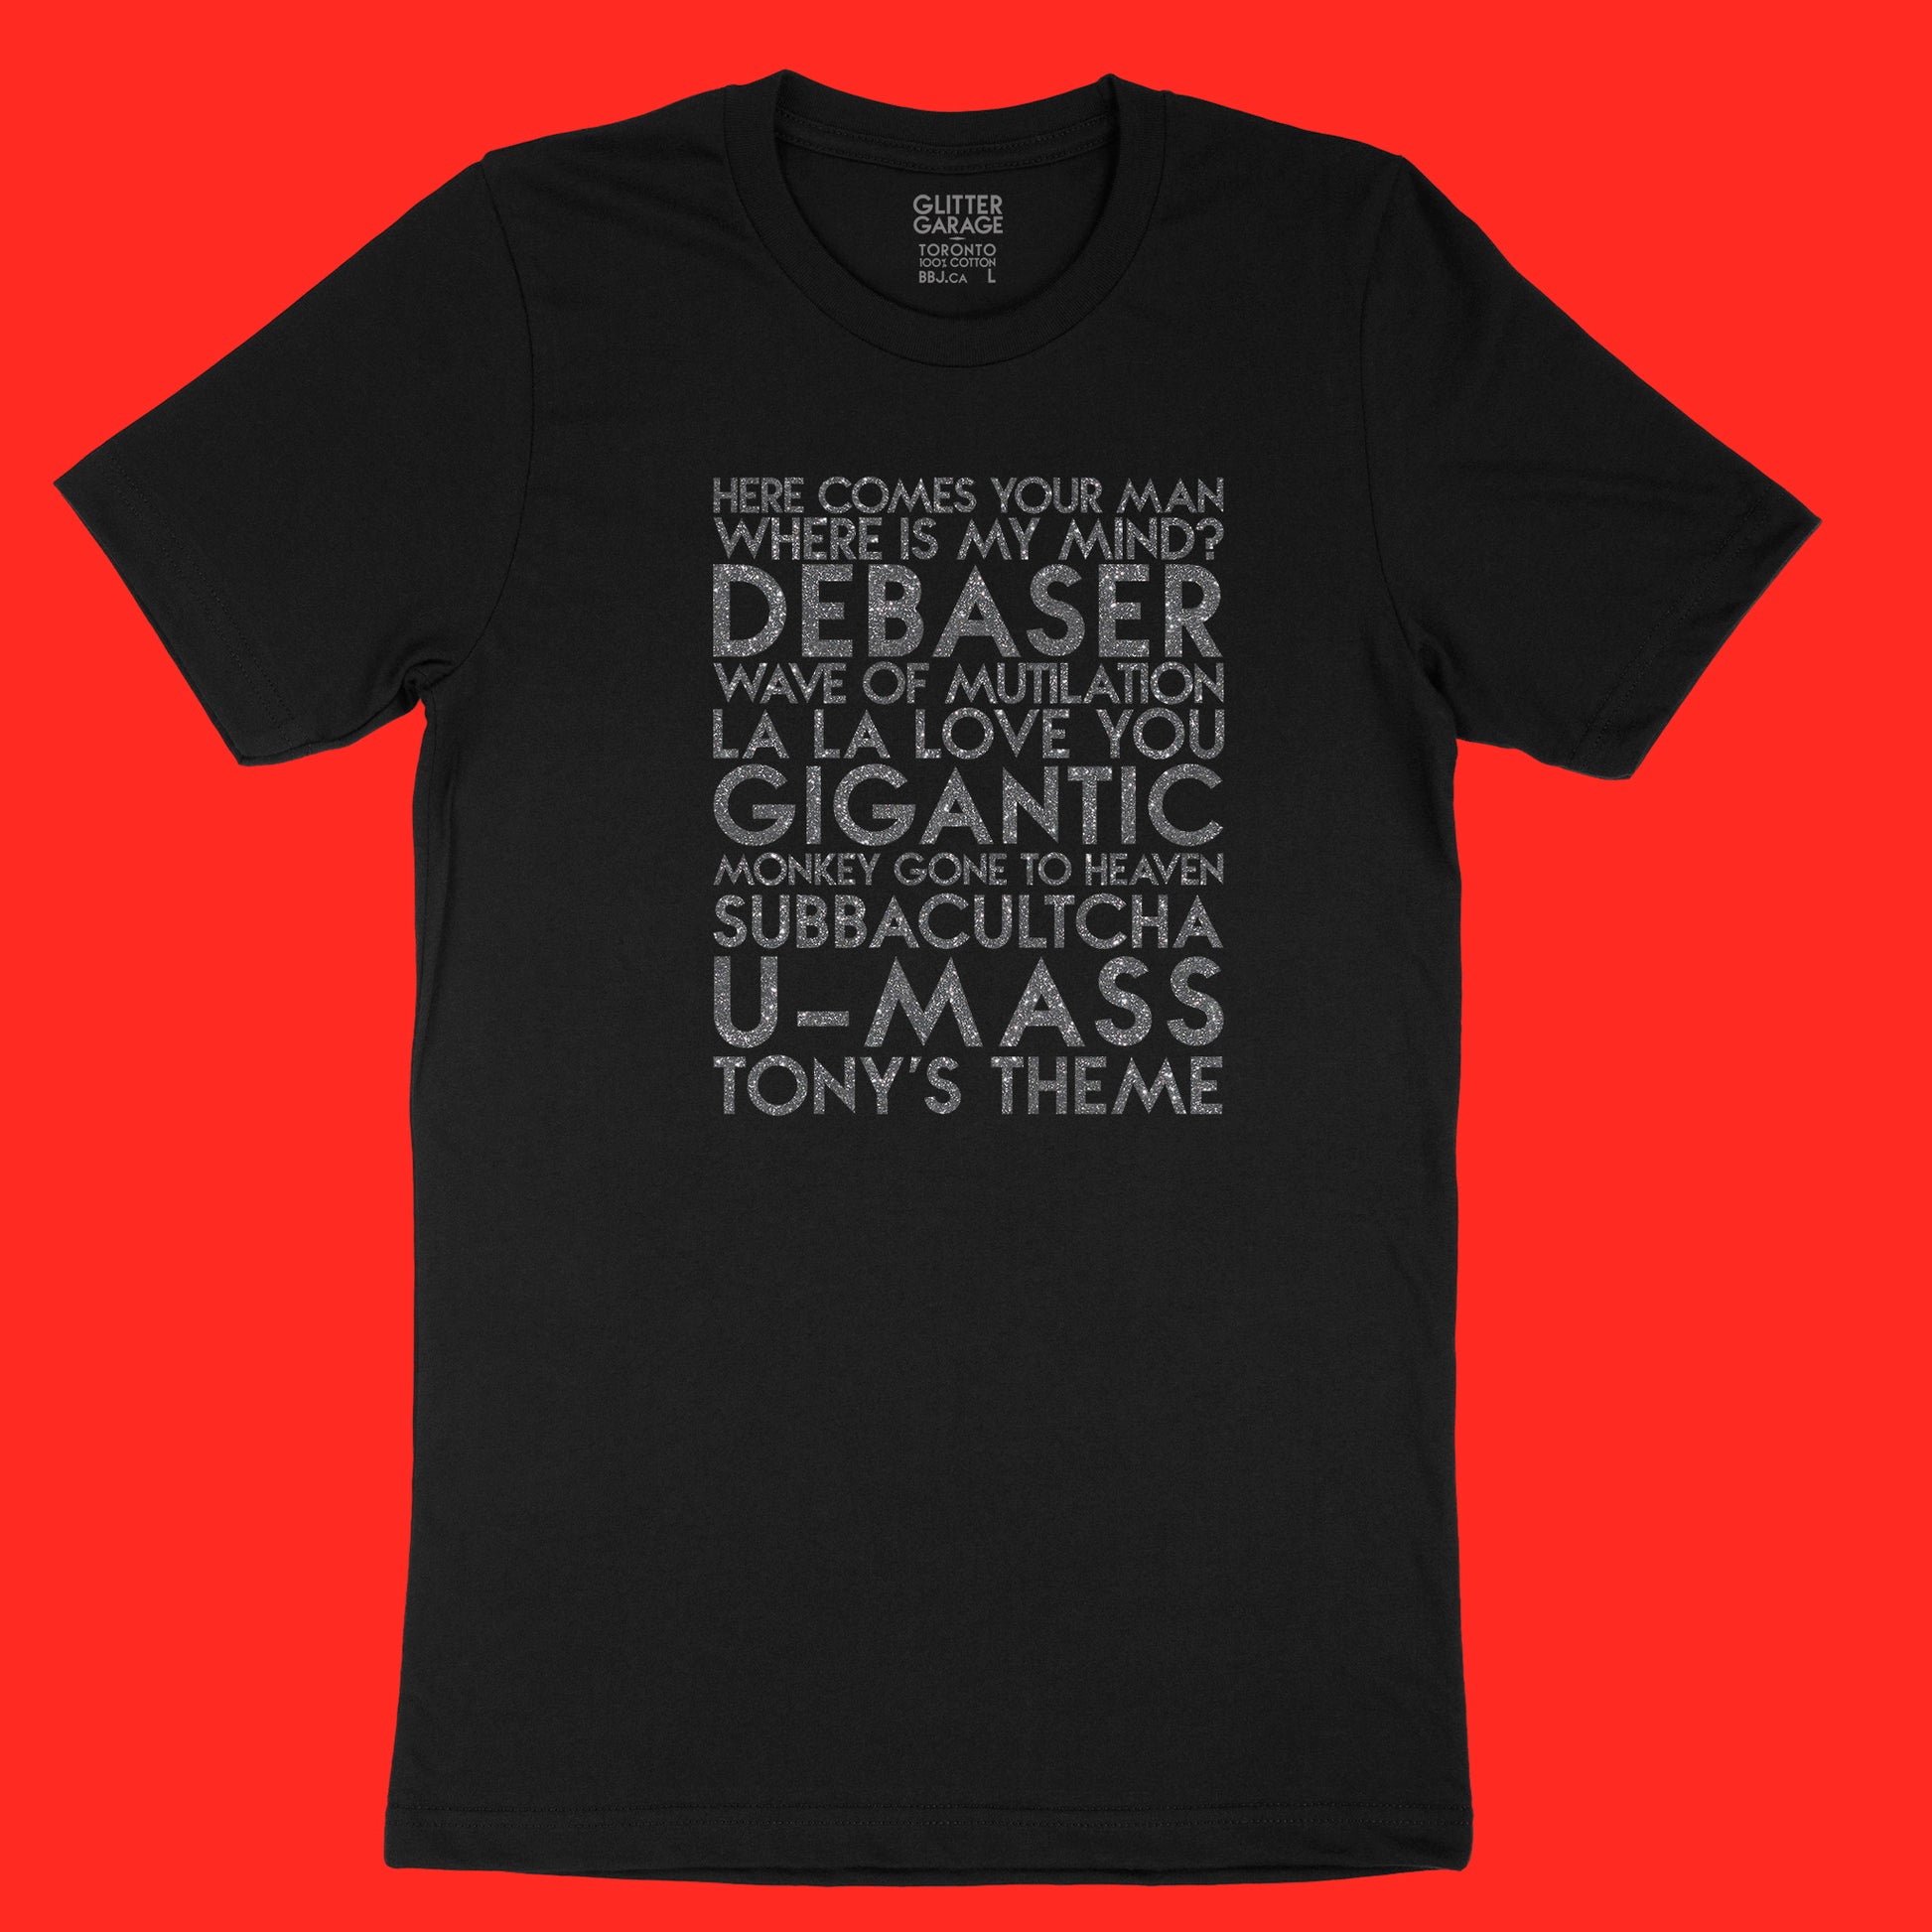 Pixies songs YourTen custom sample - gunmetal glitter text on black unisex t-shirt -  by BBJ / Glitter Garage